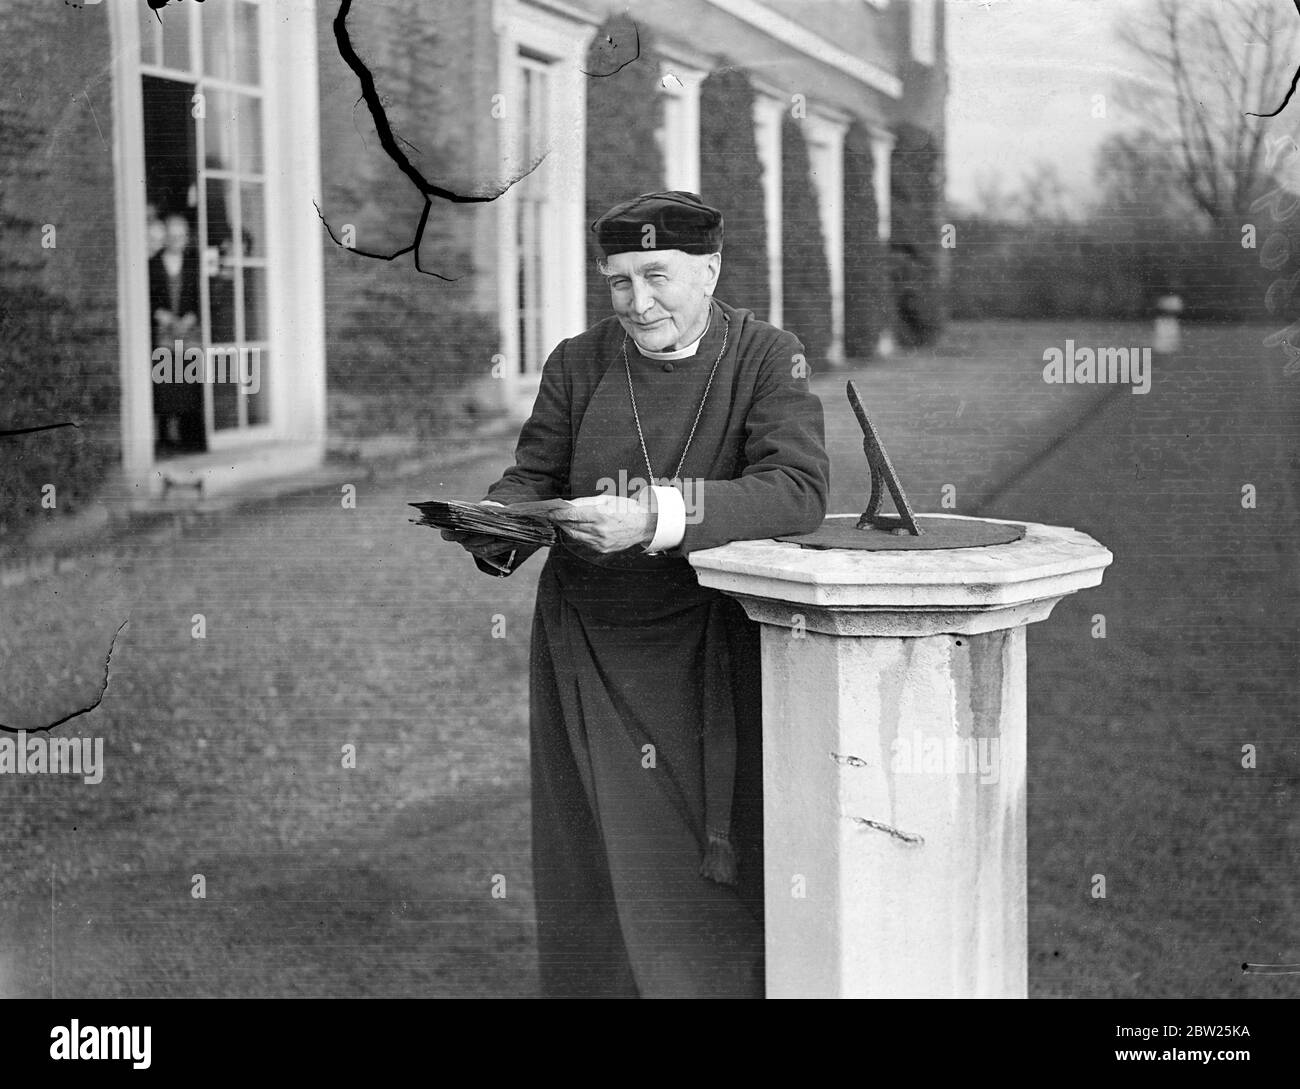 Bischof von London feiert 80. Geburtstag. Der Bischof von London, Dr. Arthur Foley Winnington Ingram, der seinen 80. Geburtstag feiert, verbrachte einen geschäftigen Morgen im Fulham Palace, um Glückwünsche zu lesen. Foto zeigt, der Bischof von London, liest Telegramme von Glückwünschen zu seinem Geburtstag im Garten von Fulham, Palace. 26. Januar 1938 Stockfoto